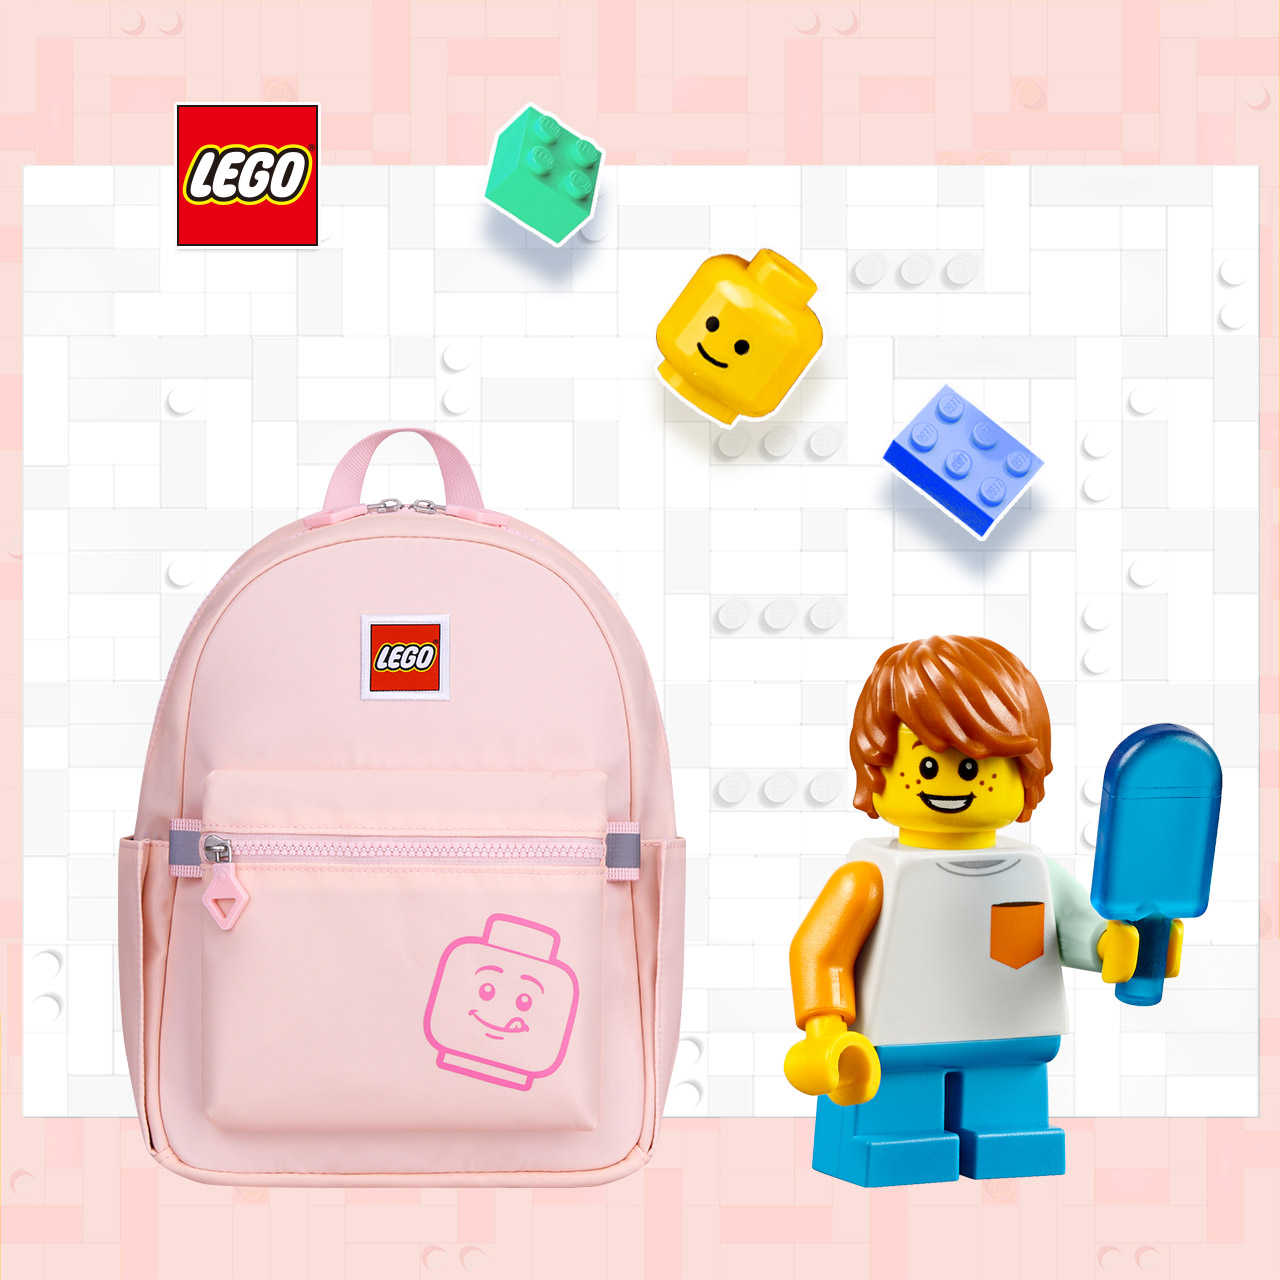 LEGO丹麥樂高笑臉小背包-積木表情符號粉紅色 20129-1935